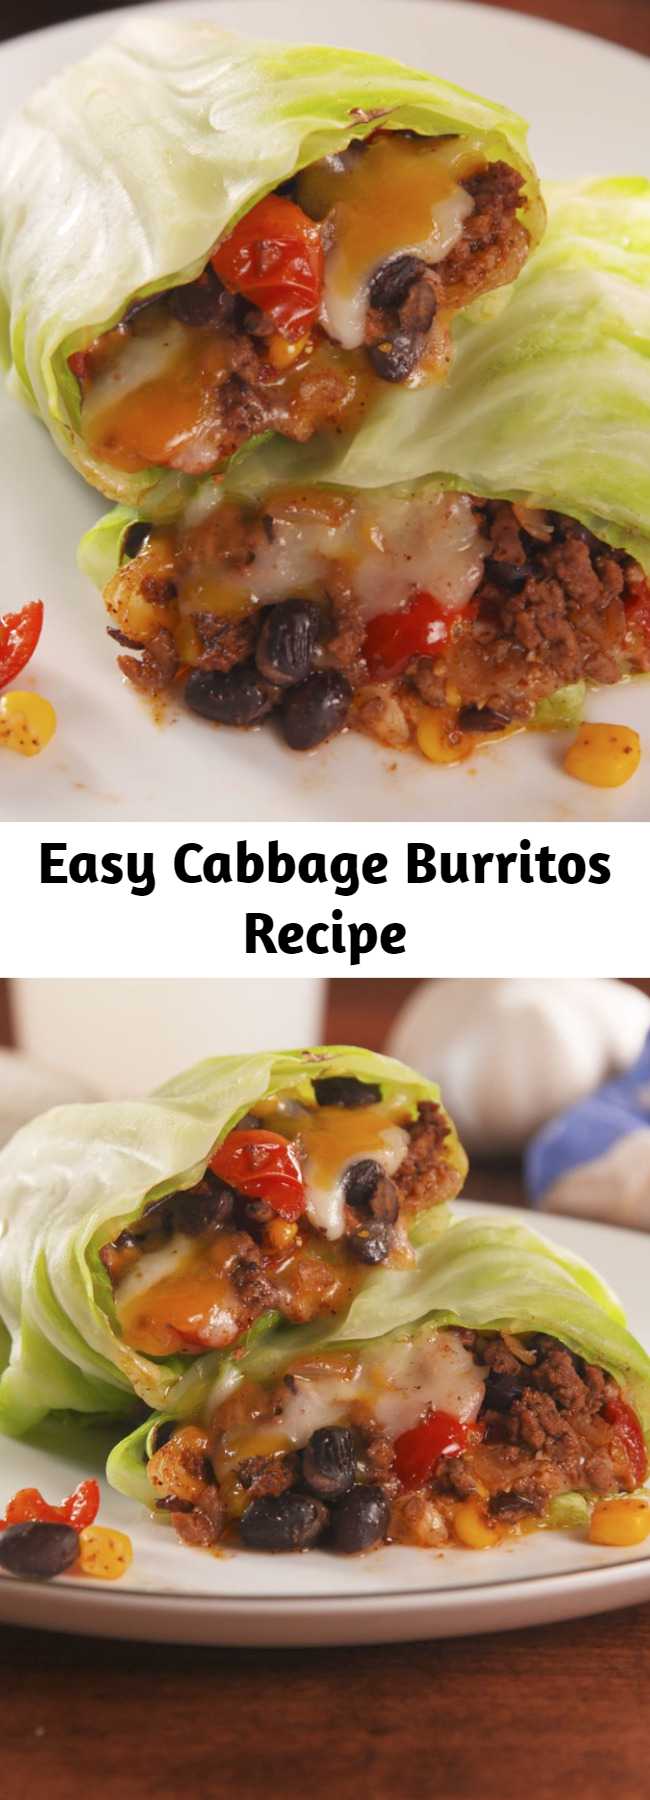 Easy Cabbage Burritos Recipe - The healthy way to get your Tex-Mex fix. #healthyrecipes #easyrecipes #cabbage #healthyburritos #lowcarb